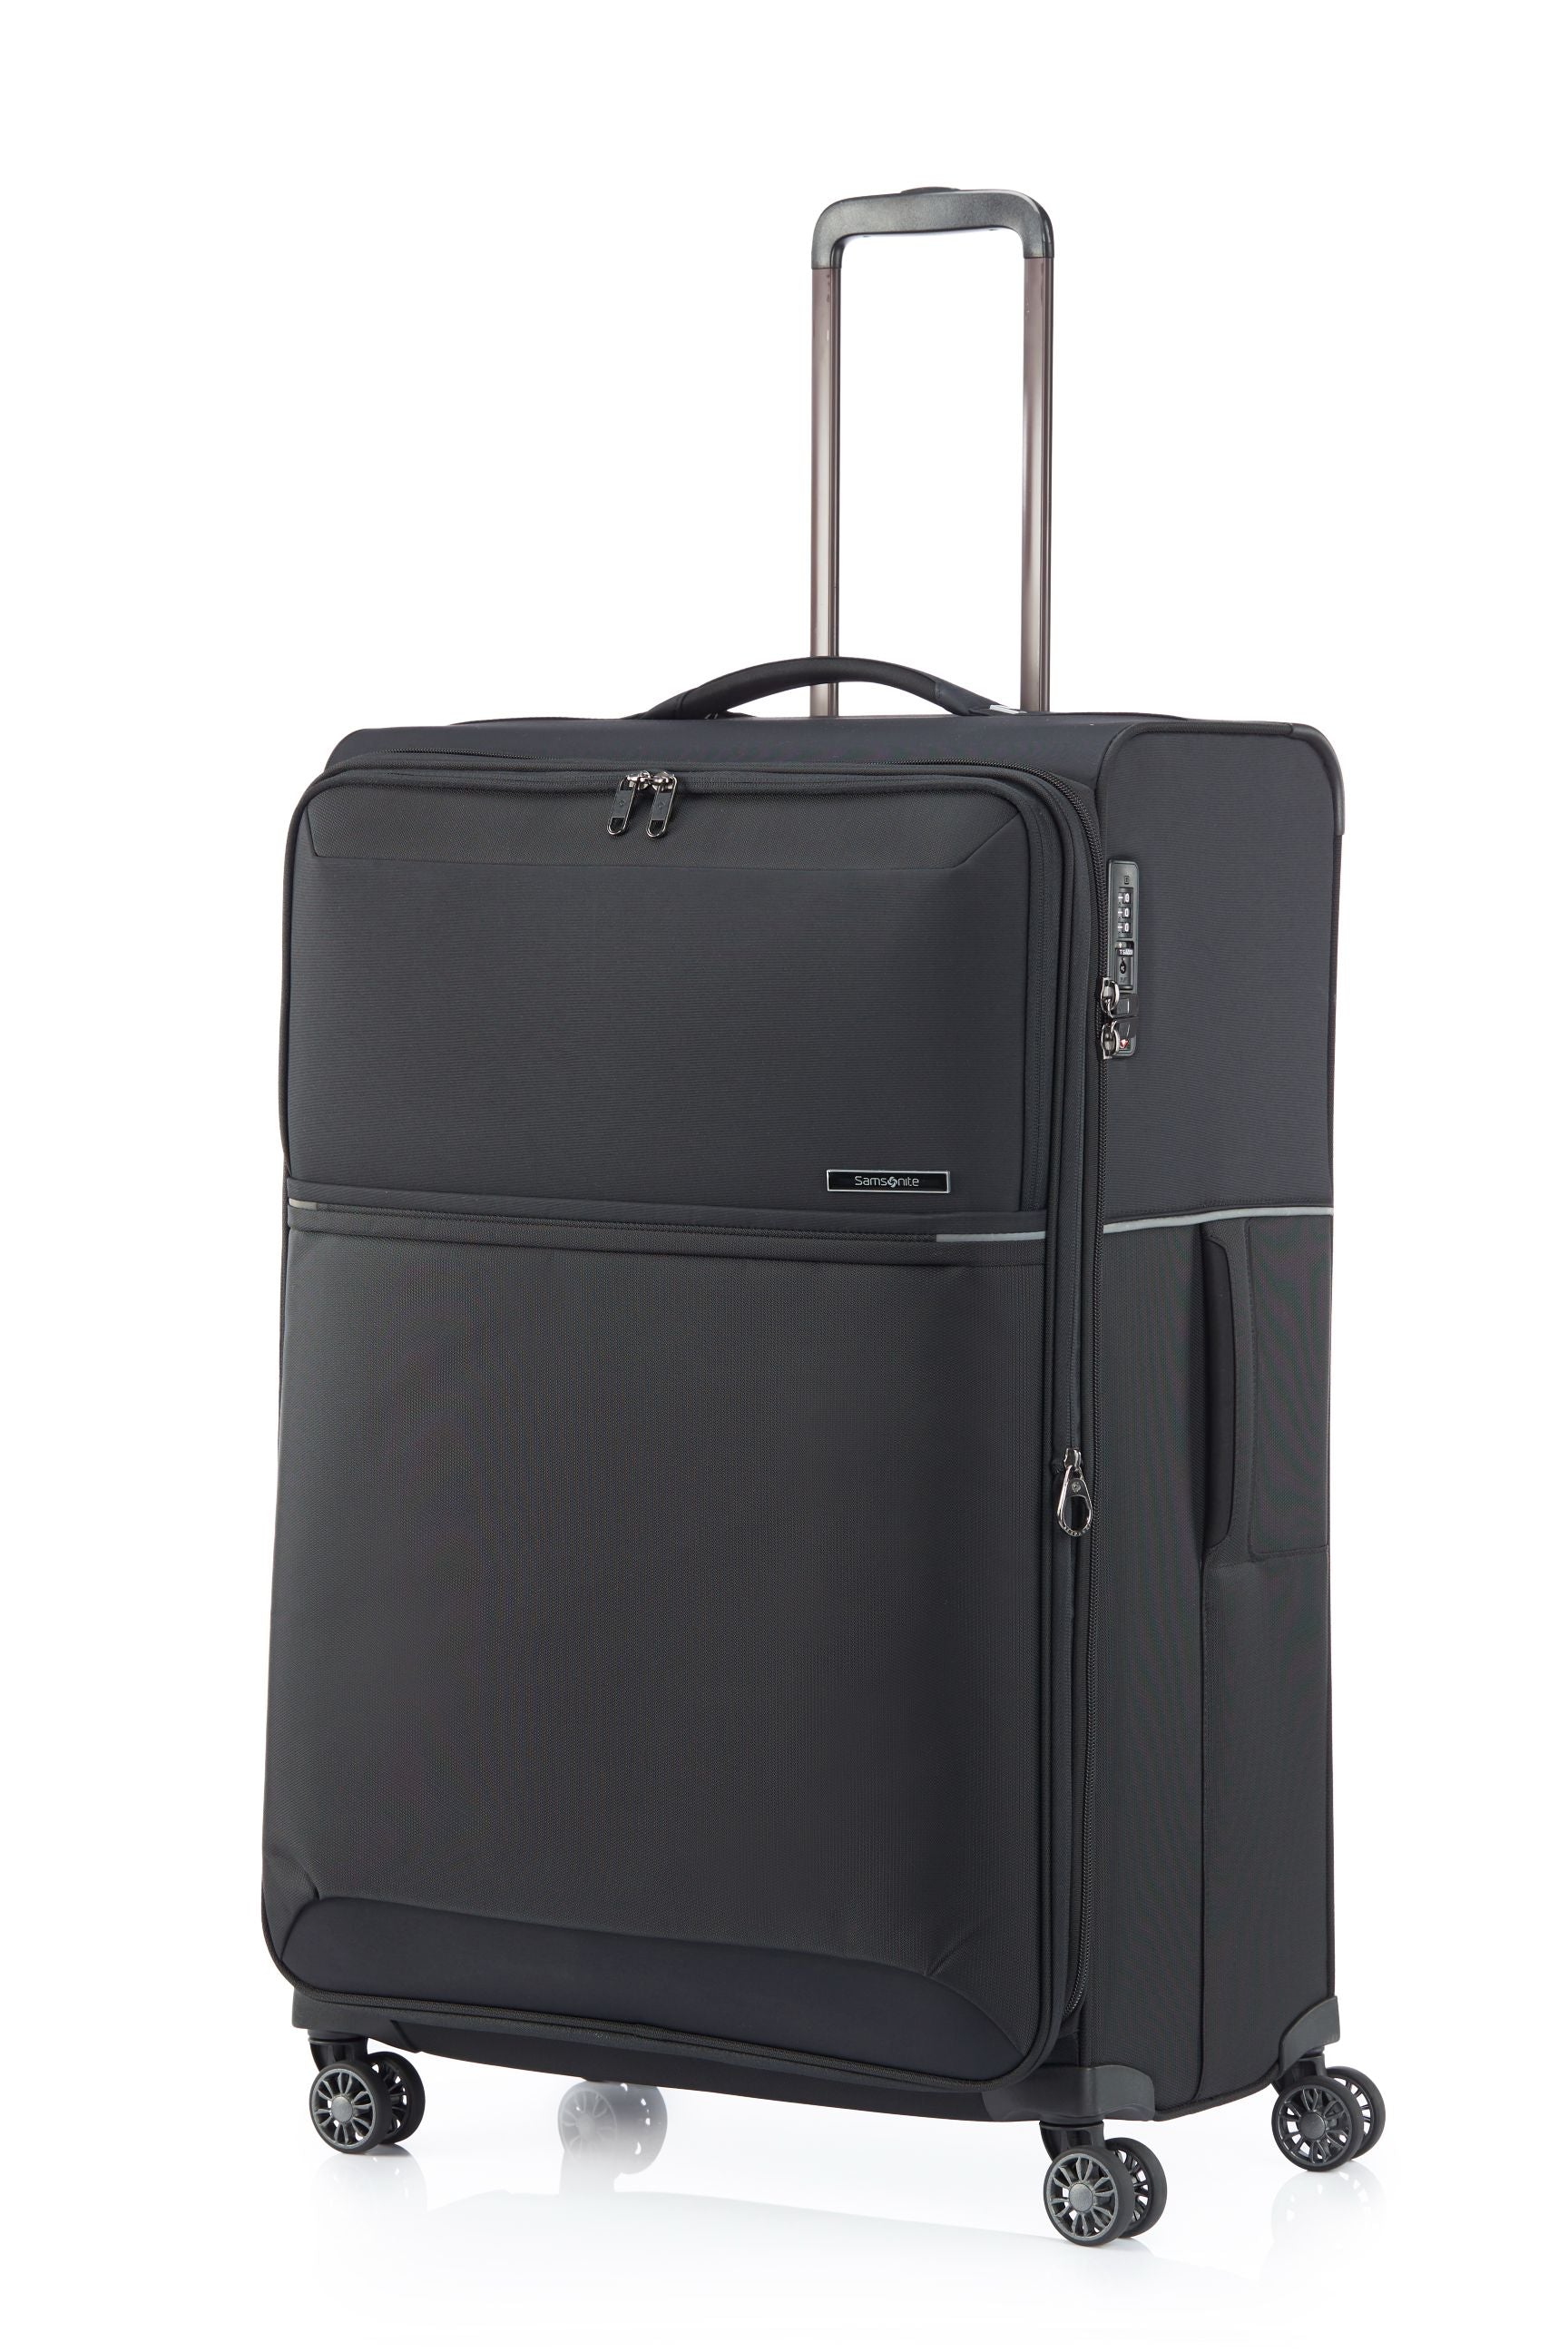 Samsonite - 73HR 78cm Large Suitcase - Black-1